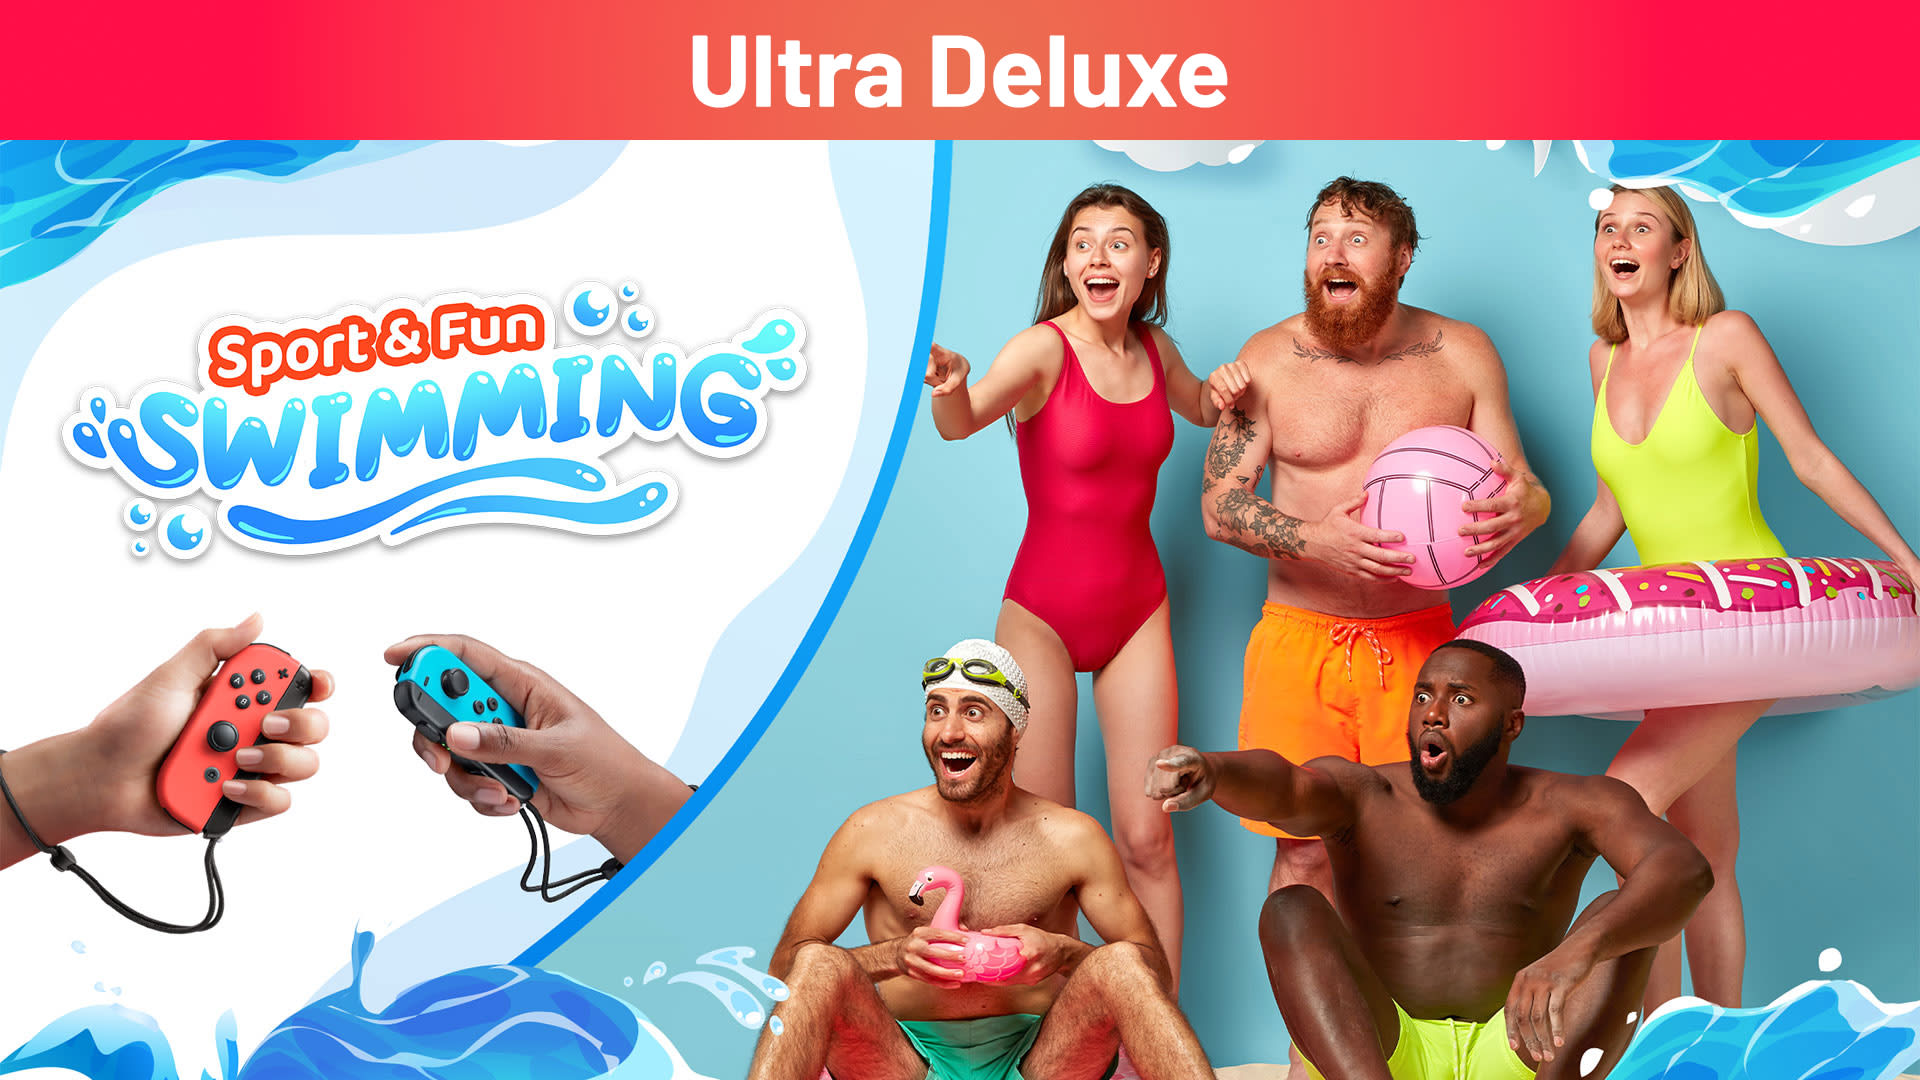 Sport & Fun: Swimming Ultra Deluxe